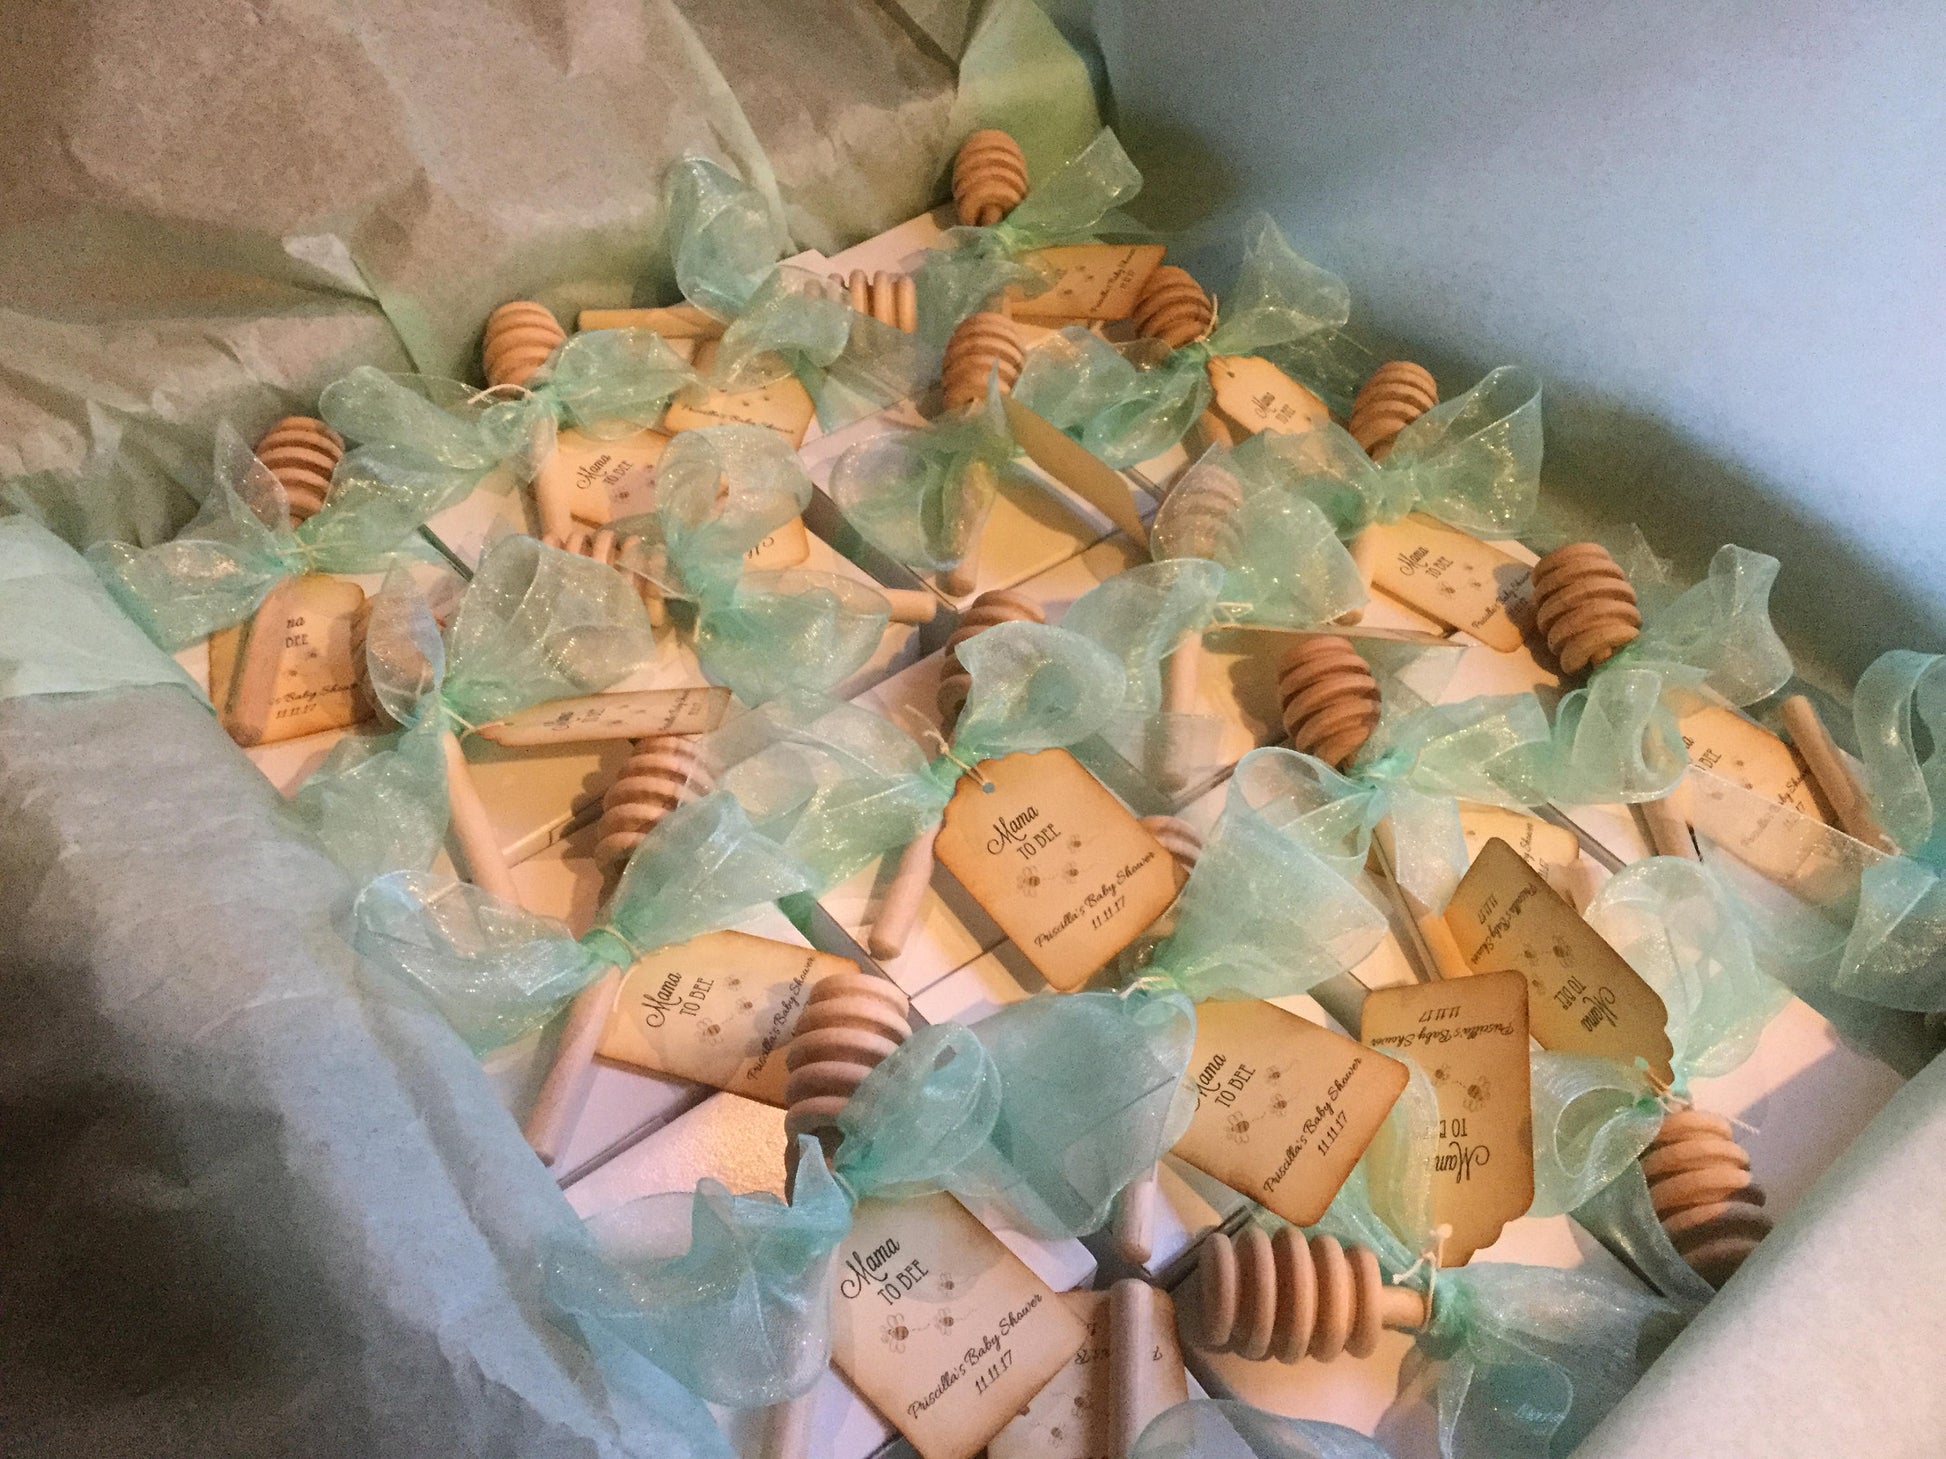 Tea Party Baby Shower - Tea & VT Honey Gift Box Favor-Wedding-Bridal Shower-Baby Shower-Belle Savon Vermont